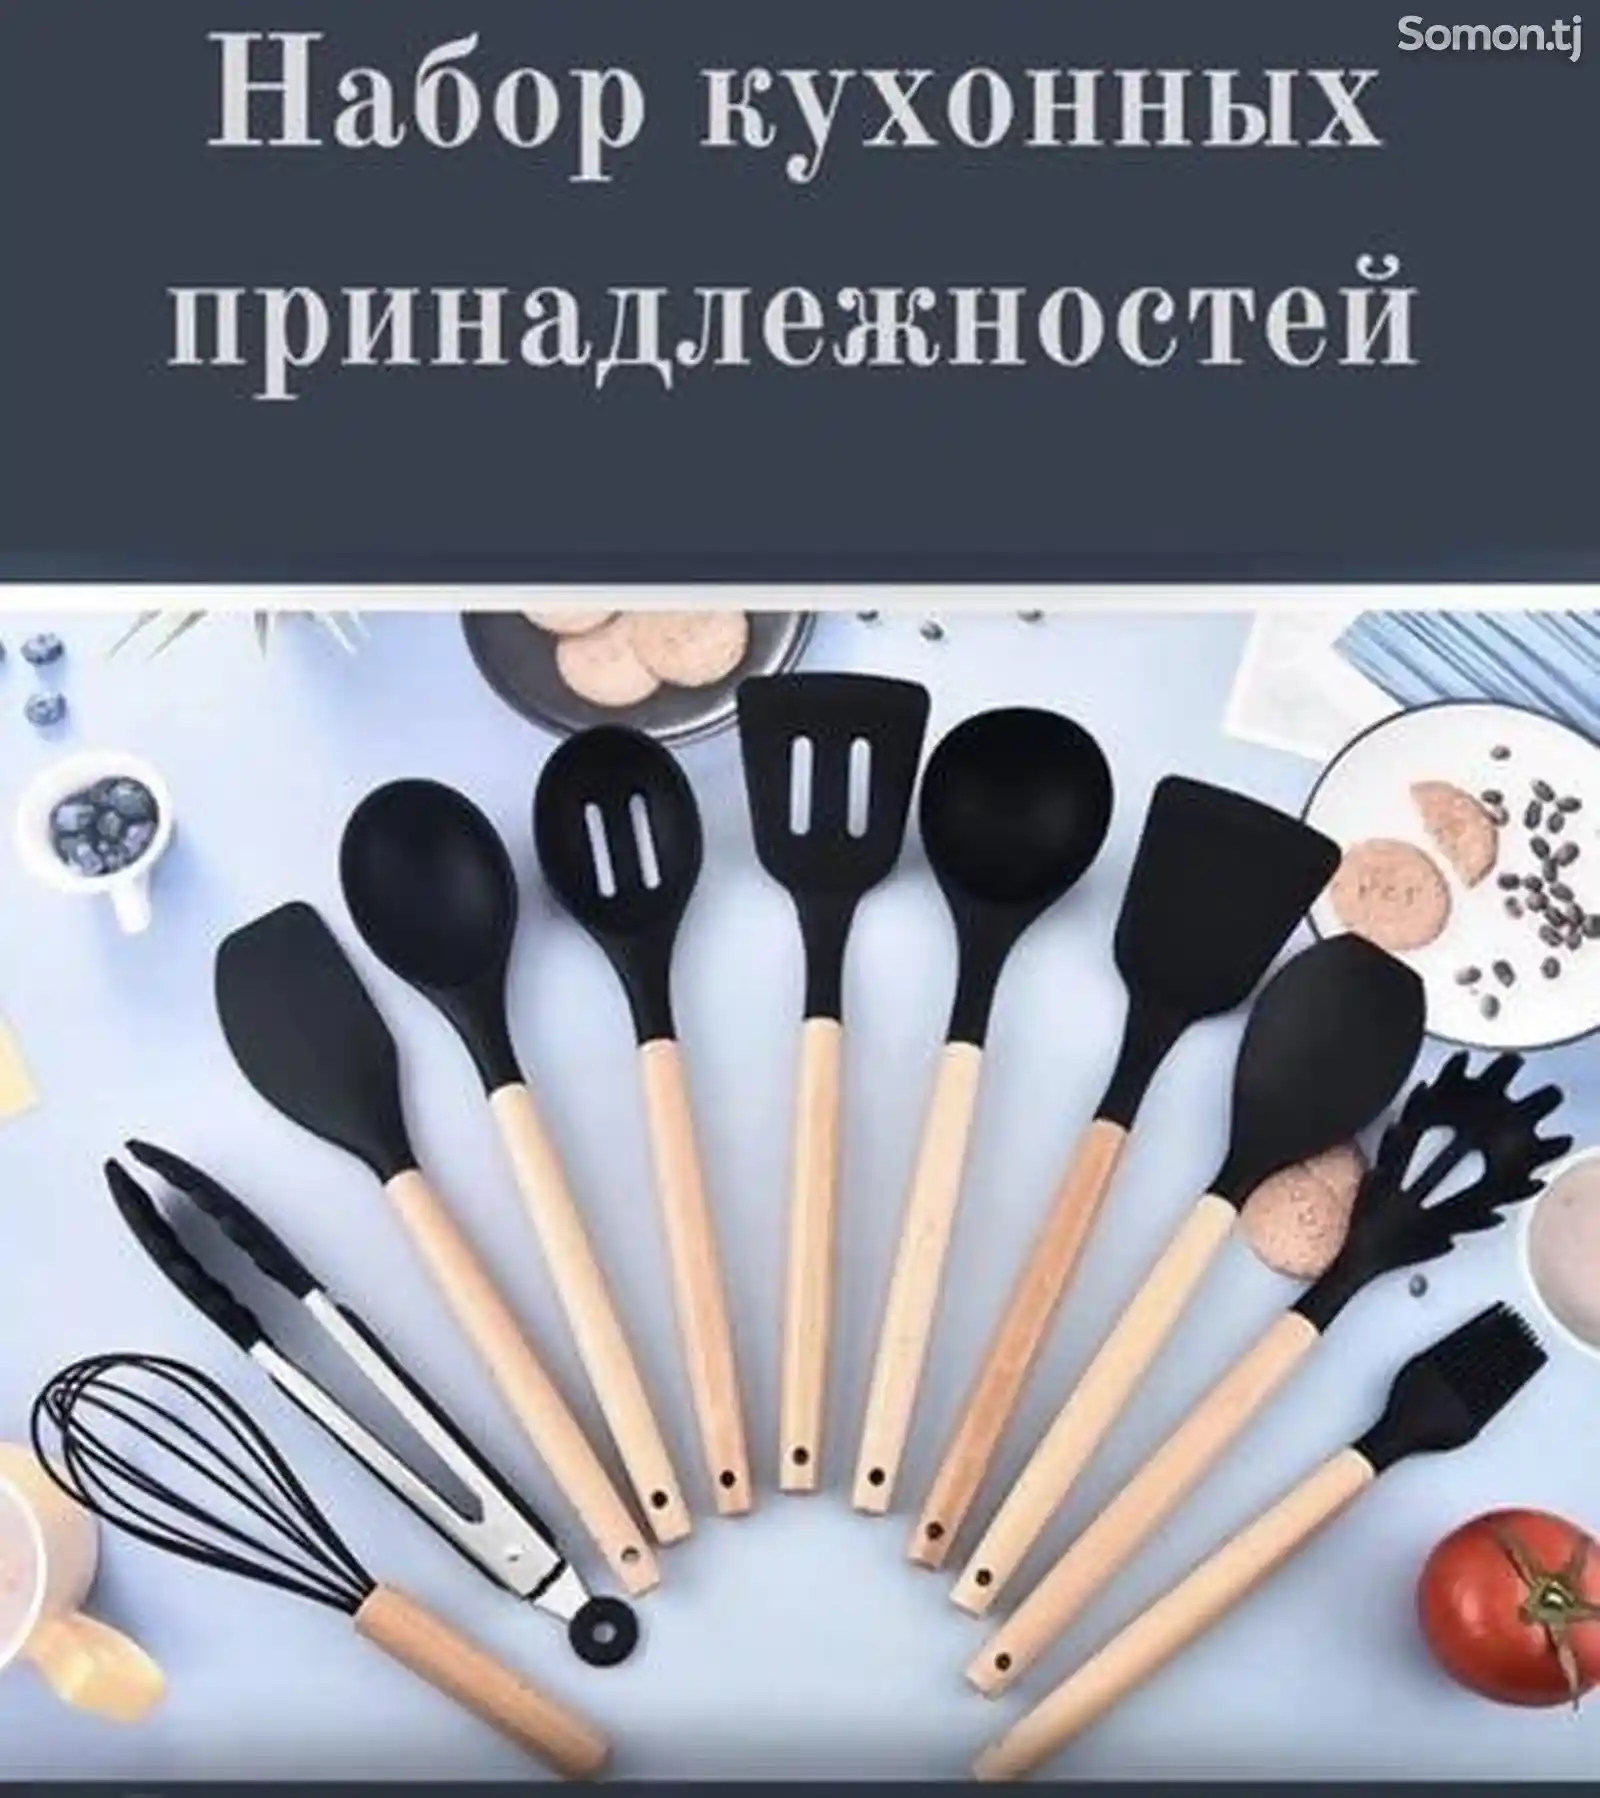 Набор кухонных принадлежностей и ножей-3